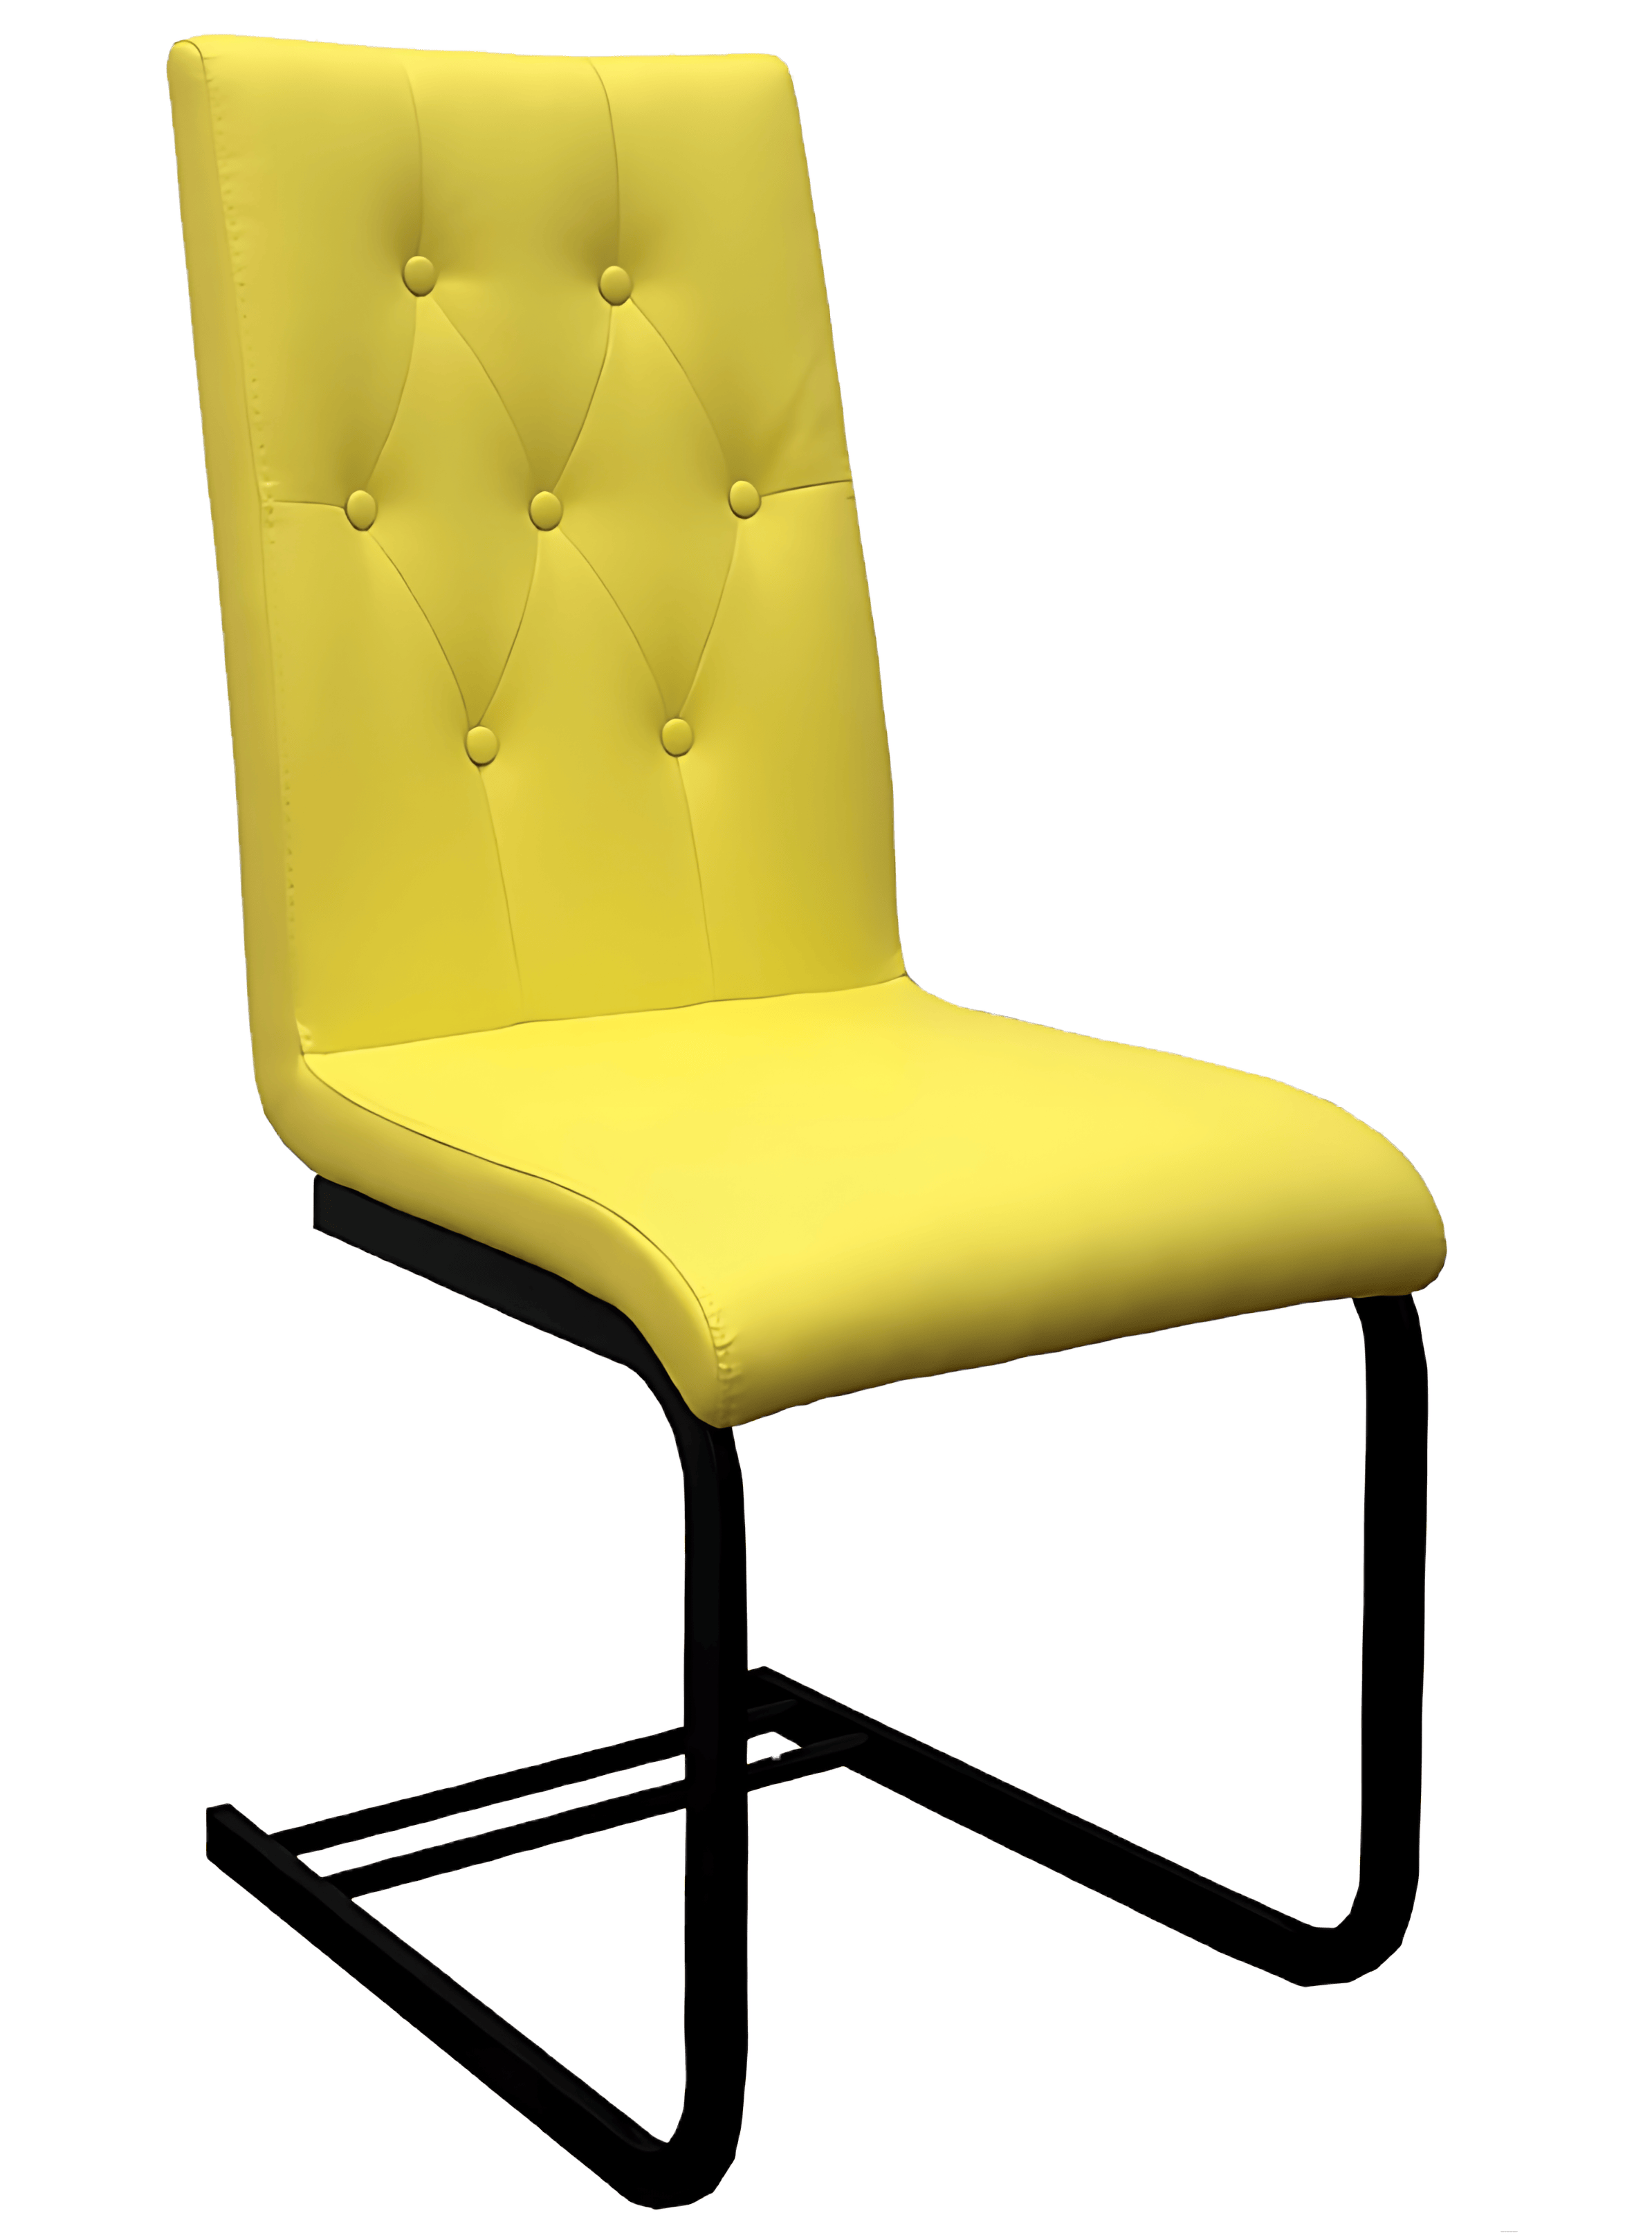 Möbelhaus Groenewold Aktion: Stuhl für 99 €